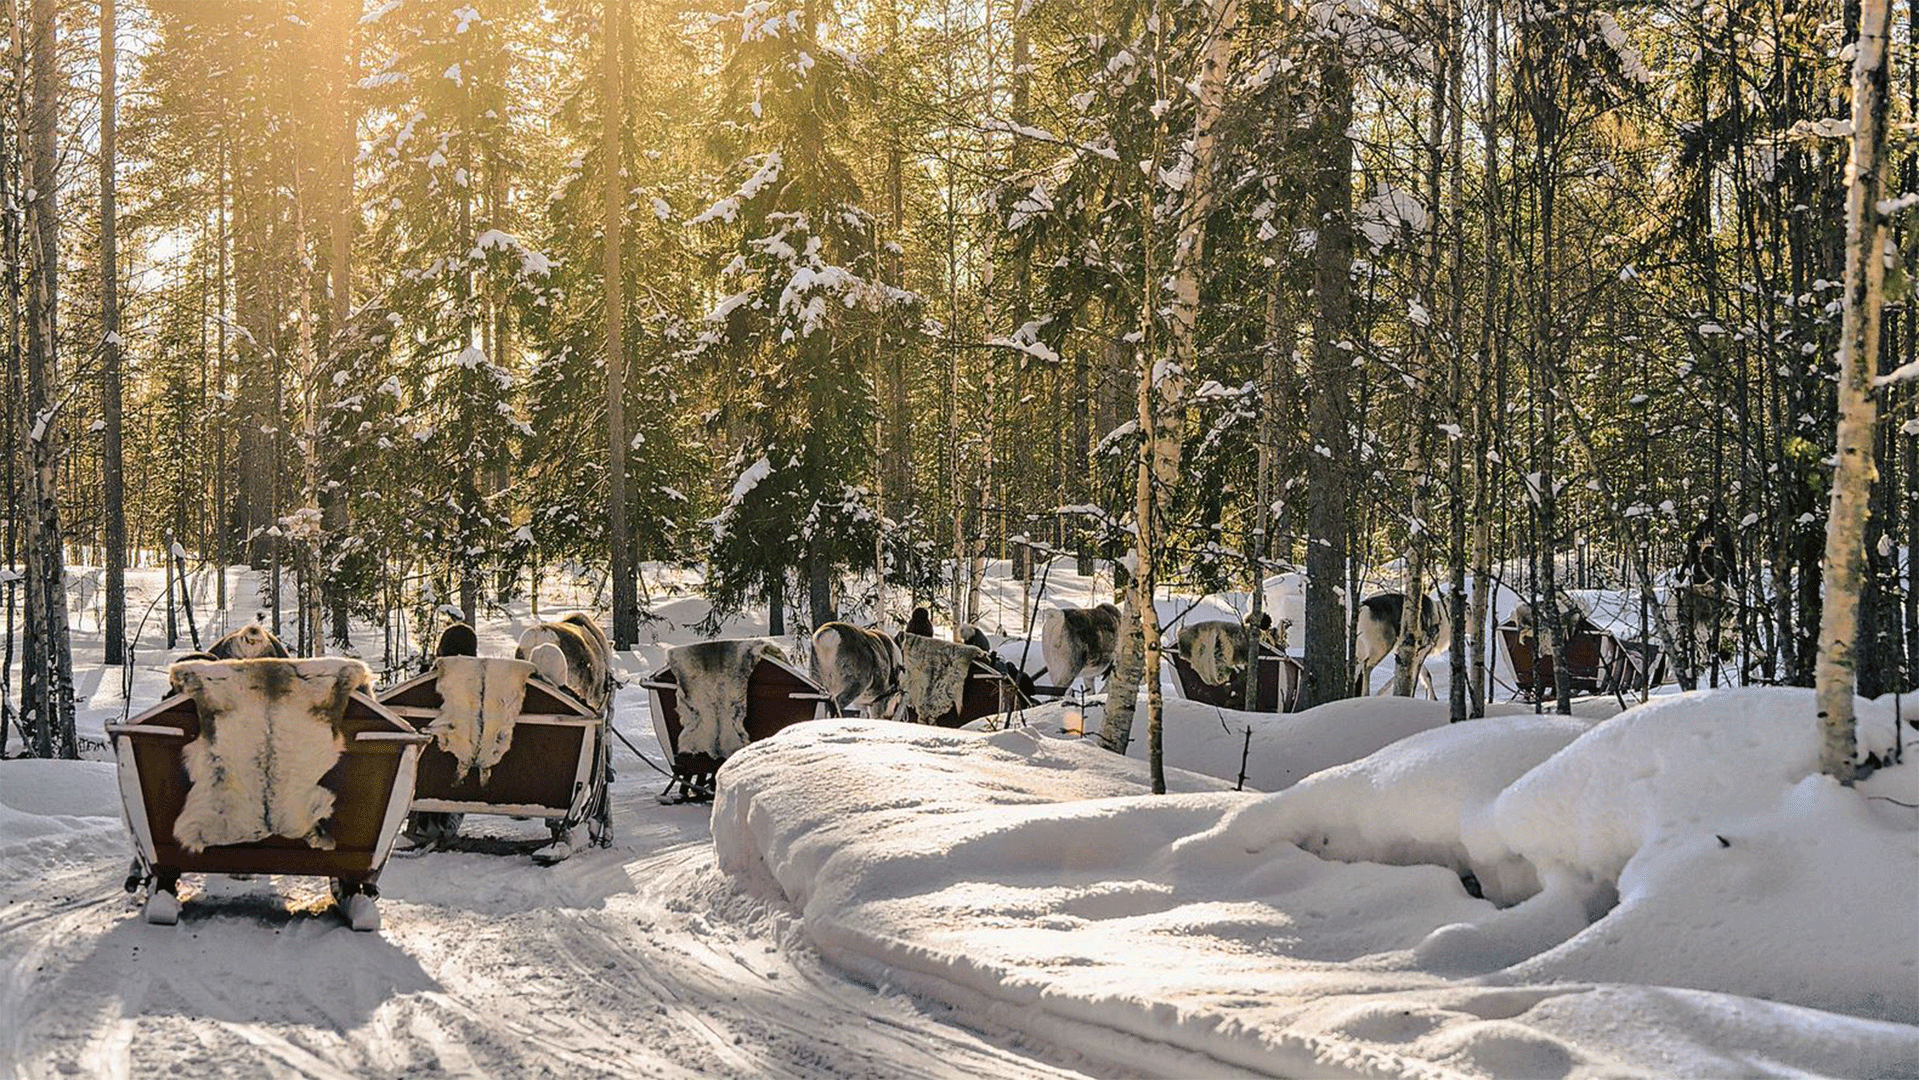 finland-lapland-reindeer-sleigh-winter-snow